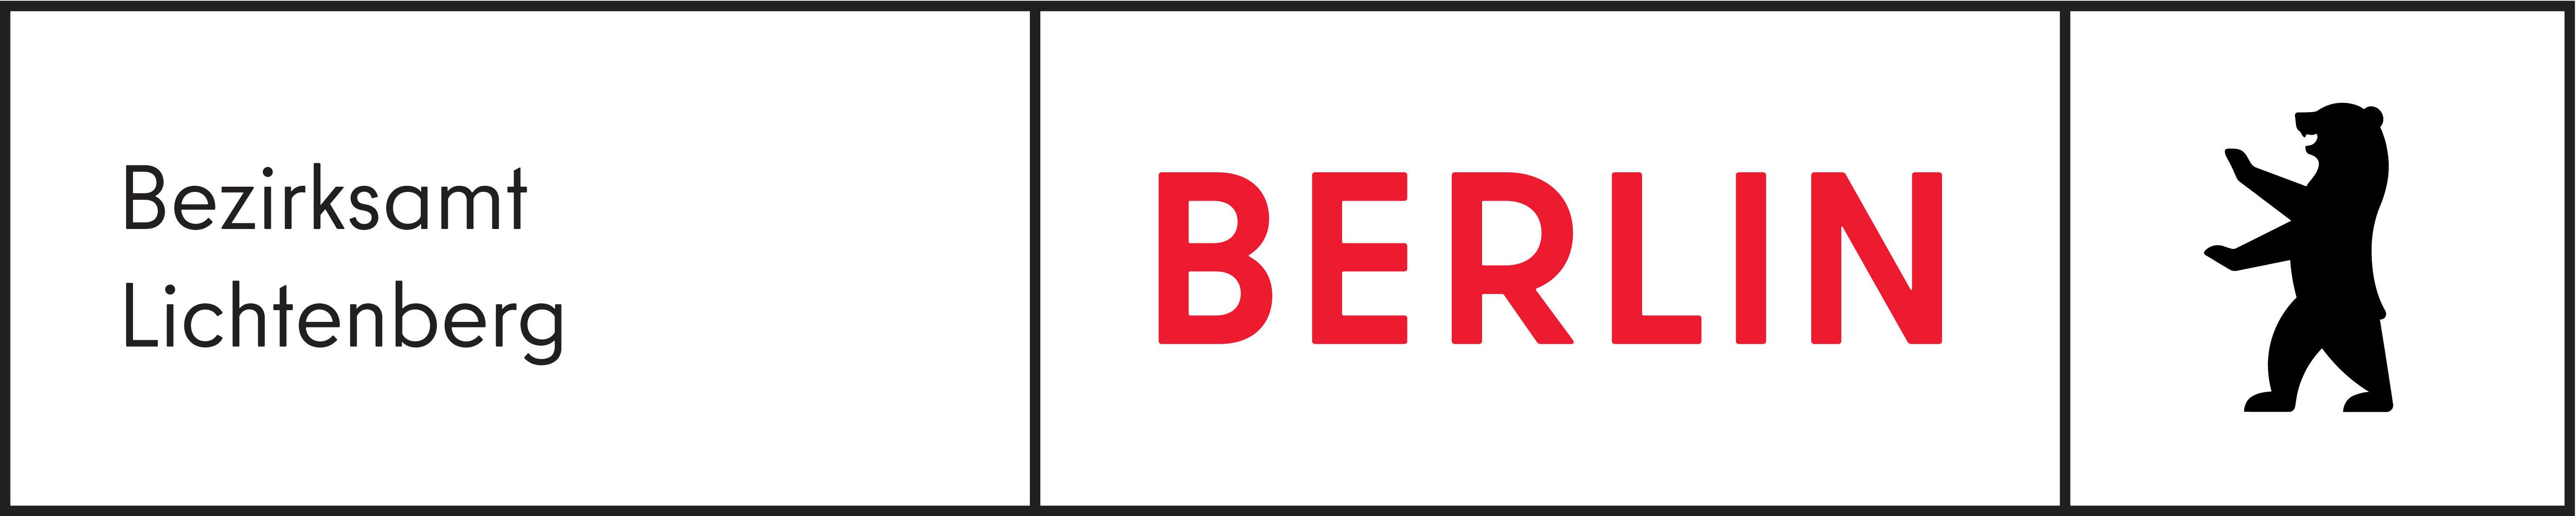 Logo Bezirksamt Lichtenberg BE